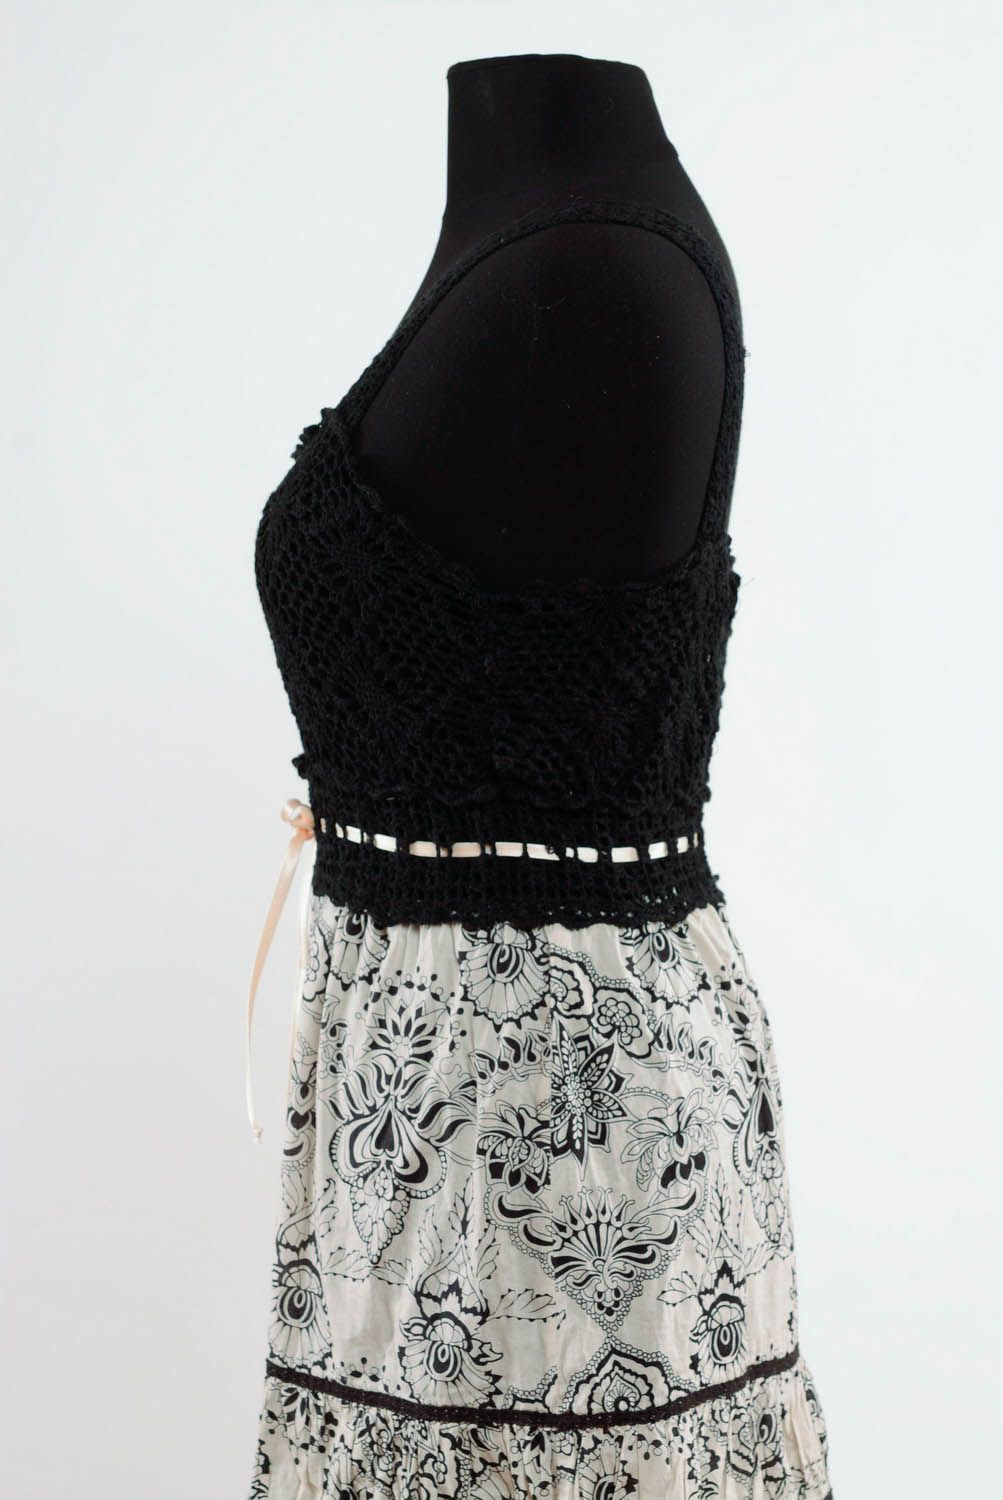 Schwarz-weißes Kleid foto 3